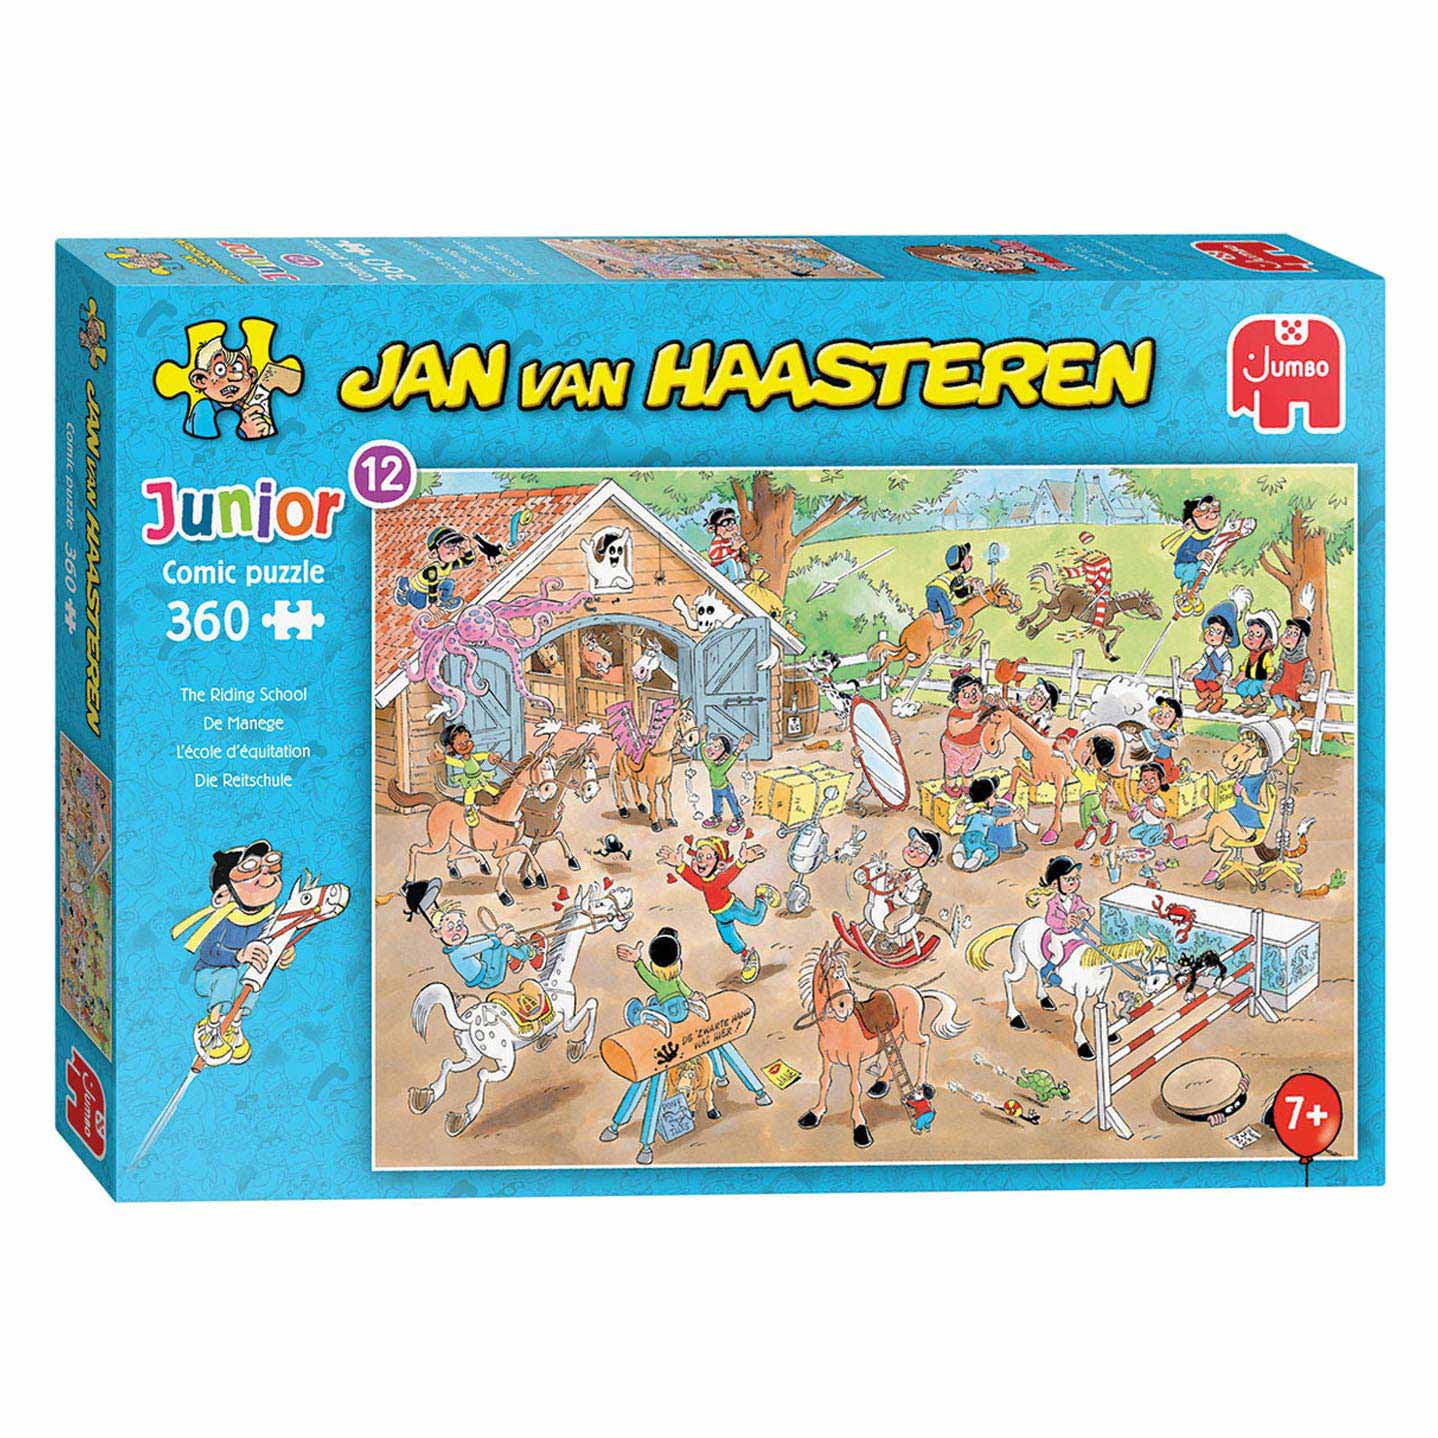 Concentratie Schuldenaar zonnebloem Jan van Haasteren Legpuzzel Junior - The Riding School, 360s - Speelgoed  Winkel Toy plaza